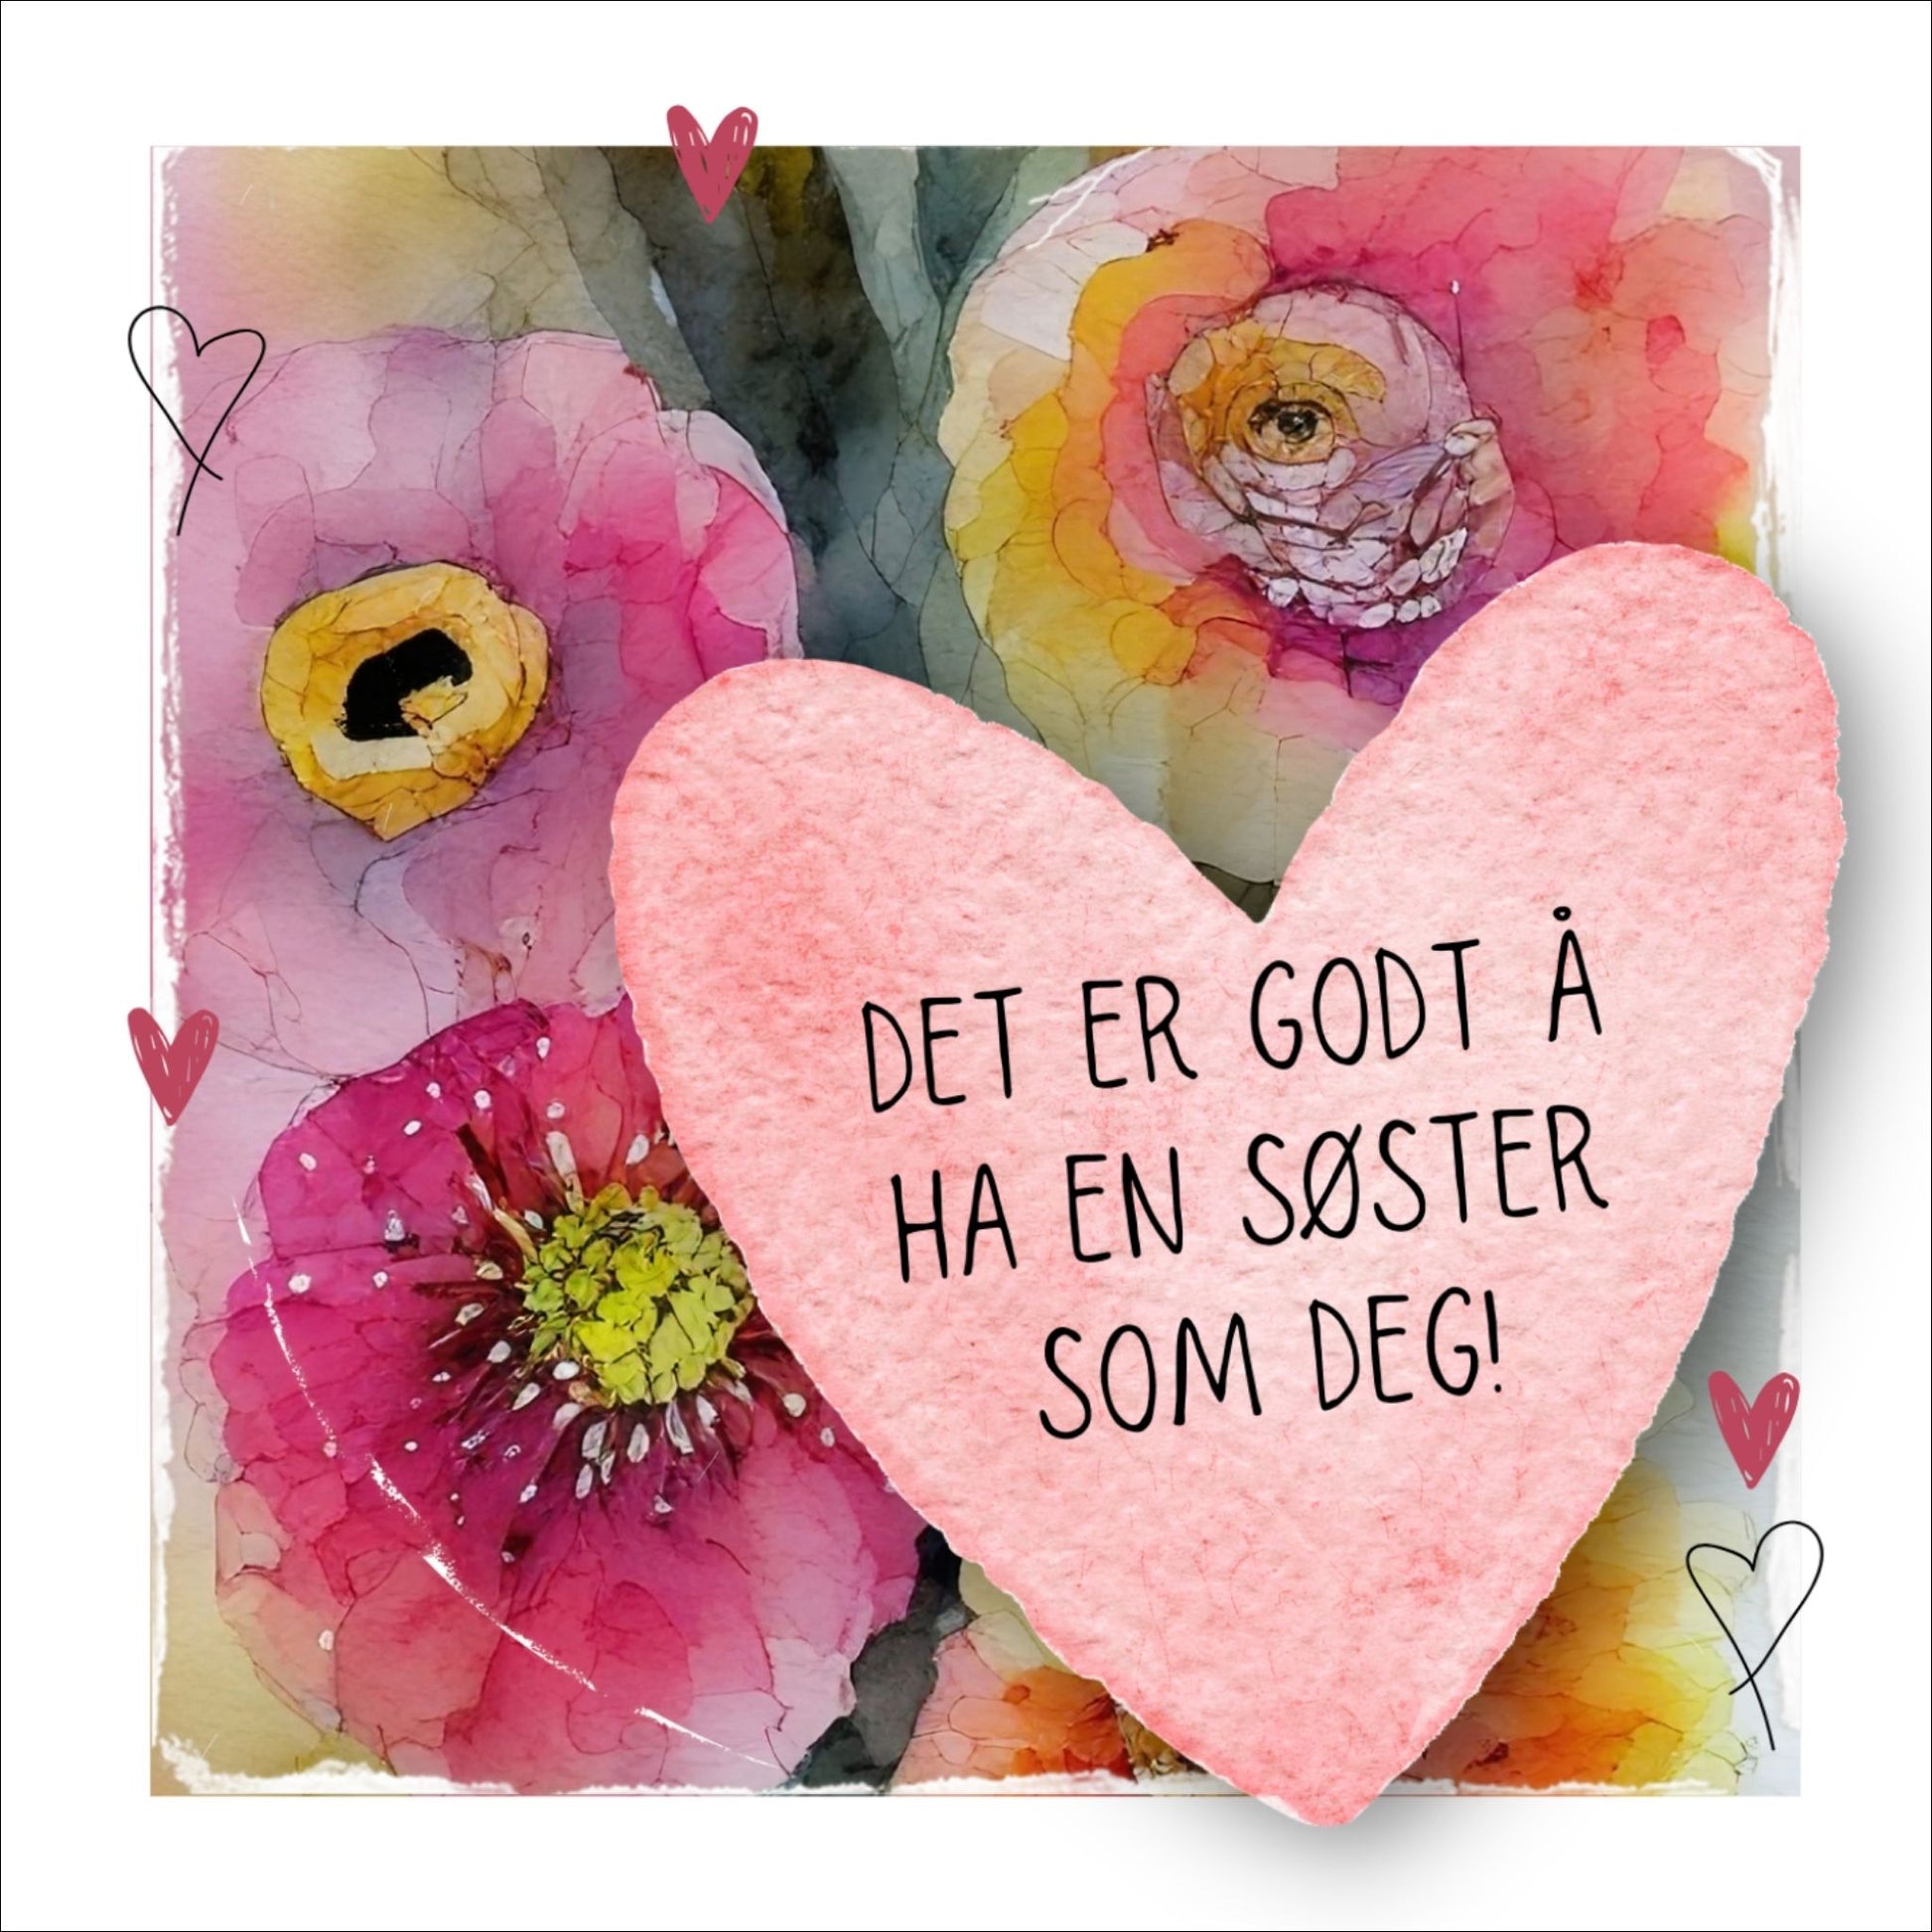 Grafisk plakat med et rosa hjerte påført tekst "Det er godt å ha en søster som deg". Bagrunn i cerise og guloransje blomster. Kortet har en hvit kant rundt på 1,5 cm.